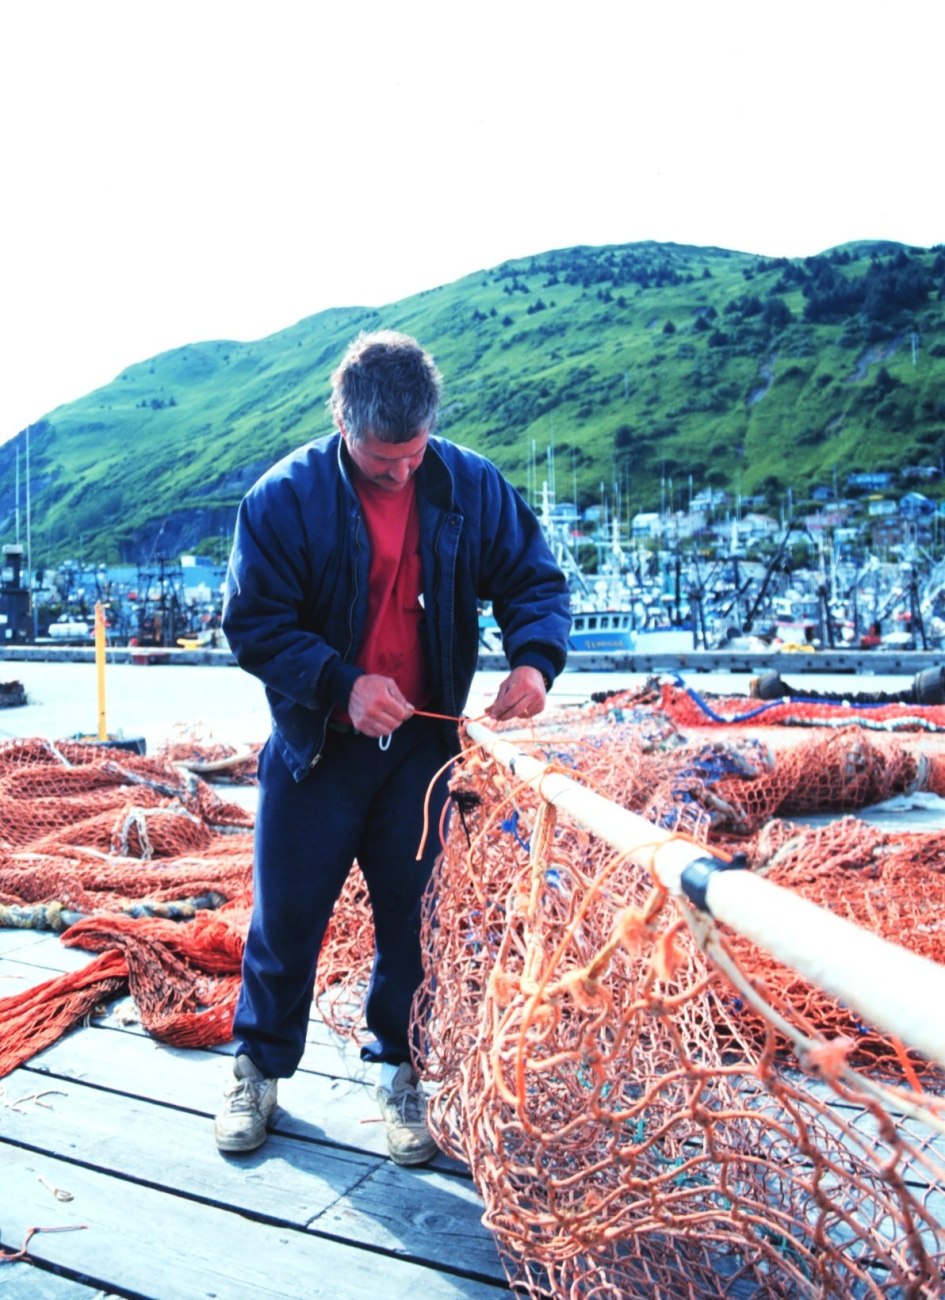 Fishermen mending nets at St